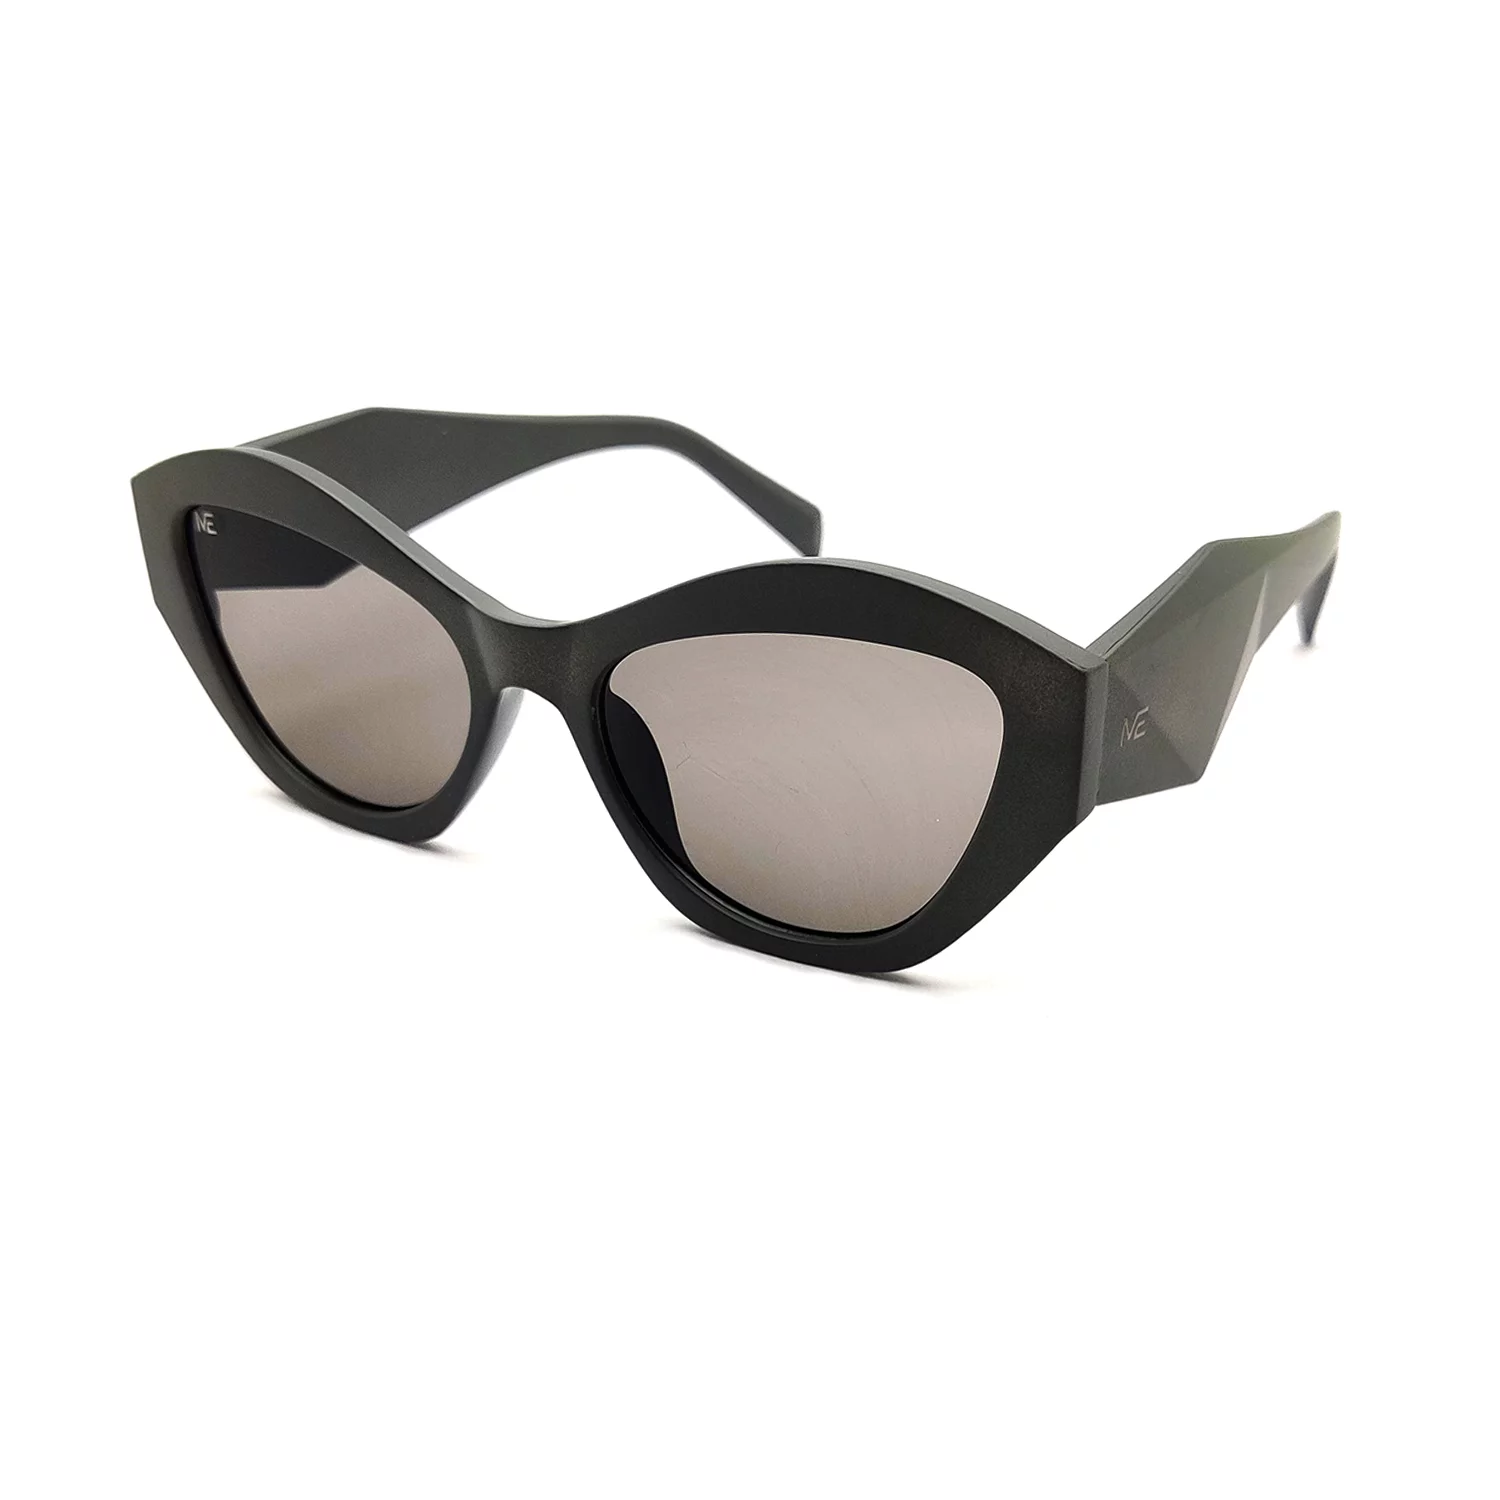 Buy I REBEL Retro Square Sunglasses Black For Men & Women Online @ Best  Prices in India | Flipkart.com